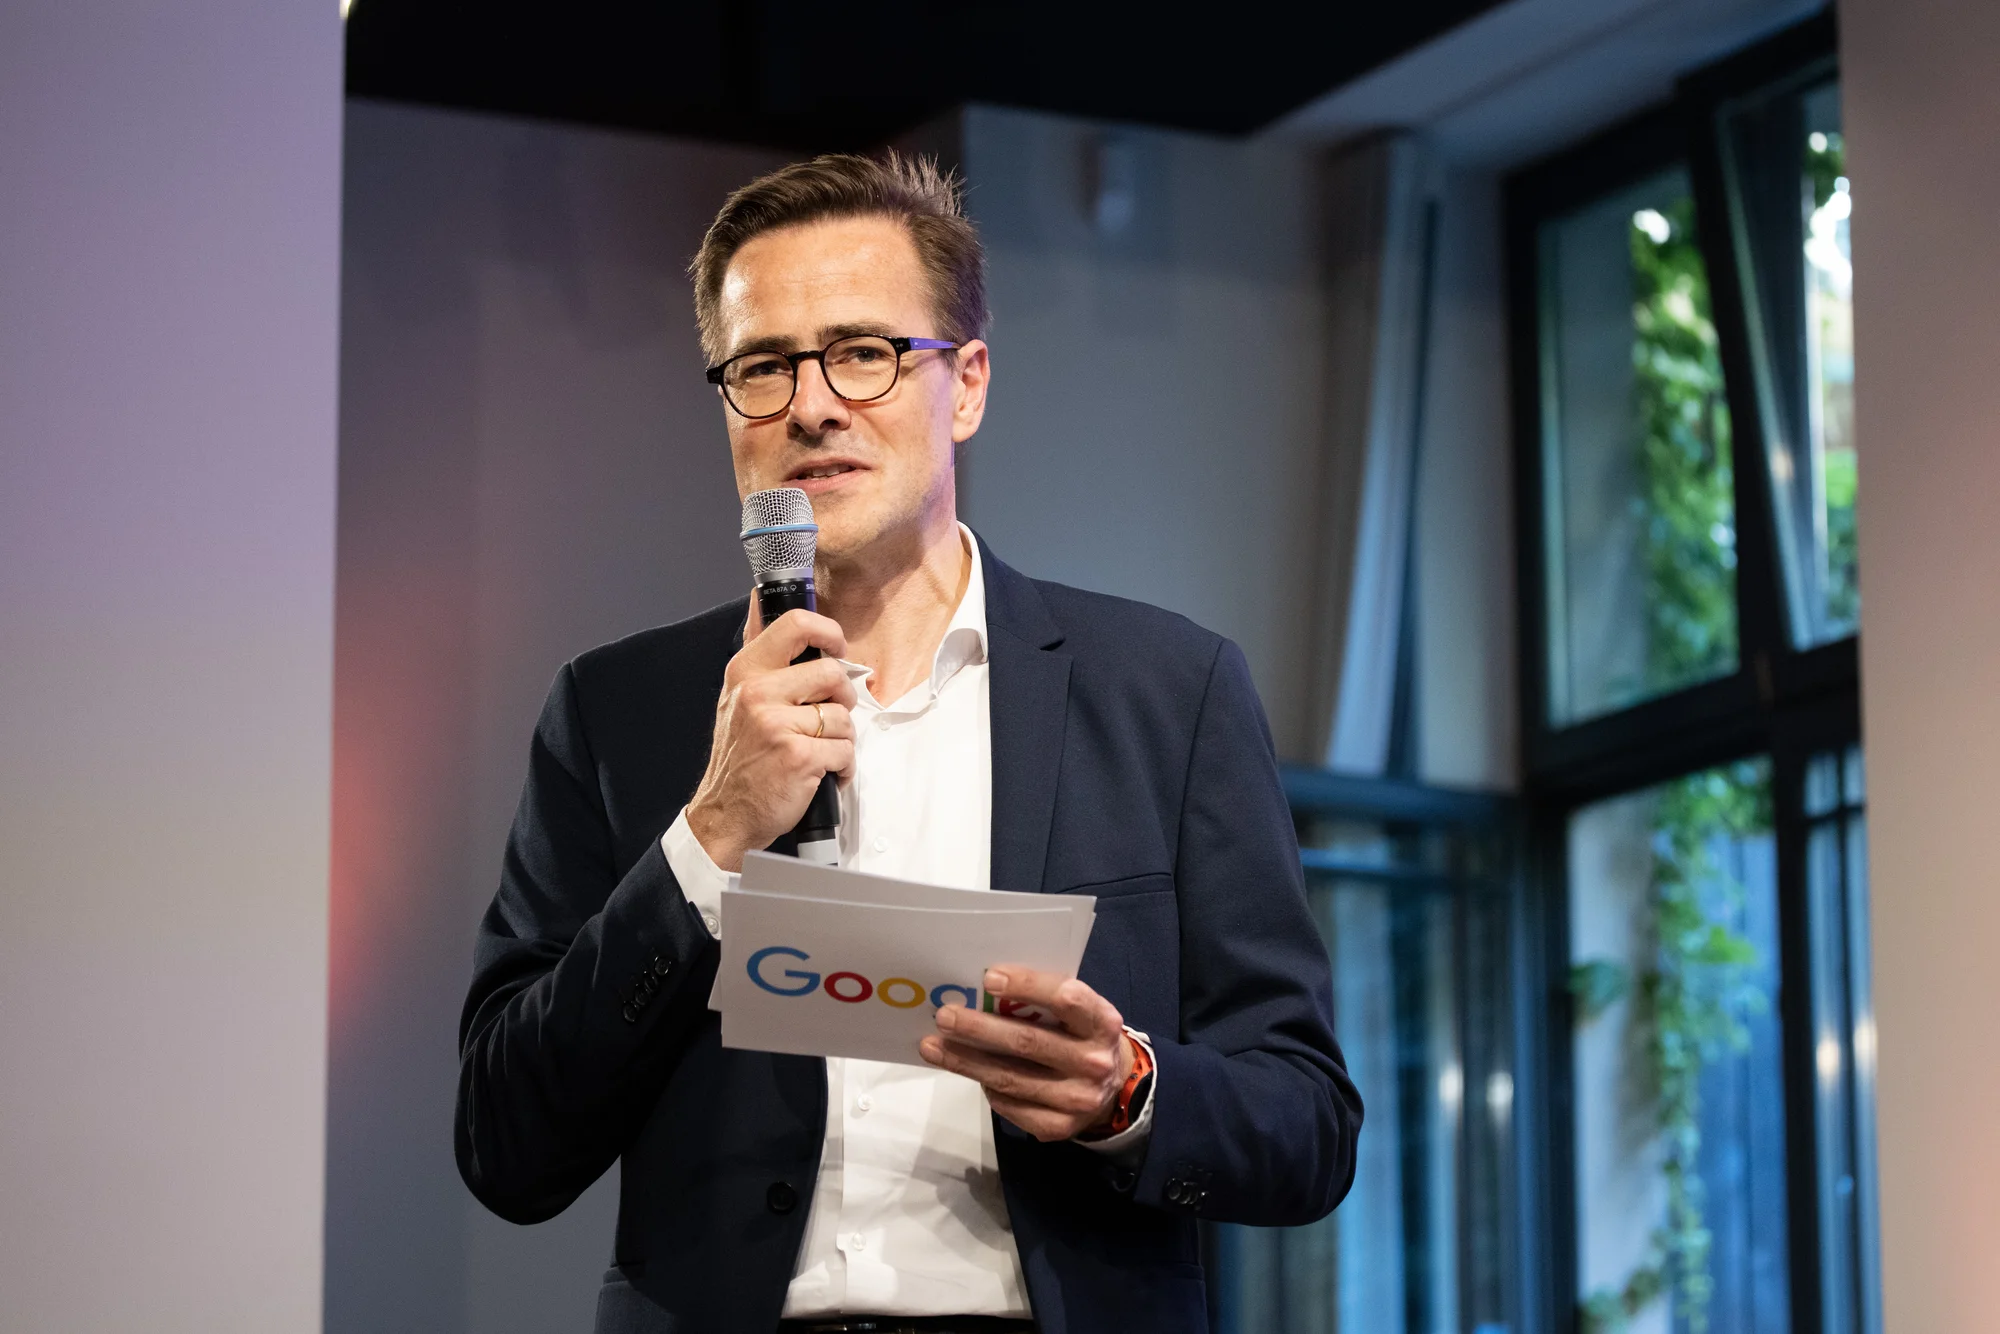 Philipp Justus steht auf der Bühne beim Black Founders-Event. In seiner rechten Hand hält er ein Mikrofon, in seiner linken Hand Moderationskarten mit dem Google-Logo.